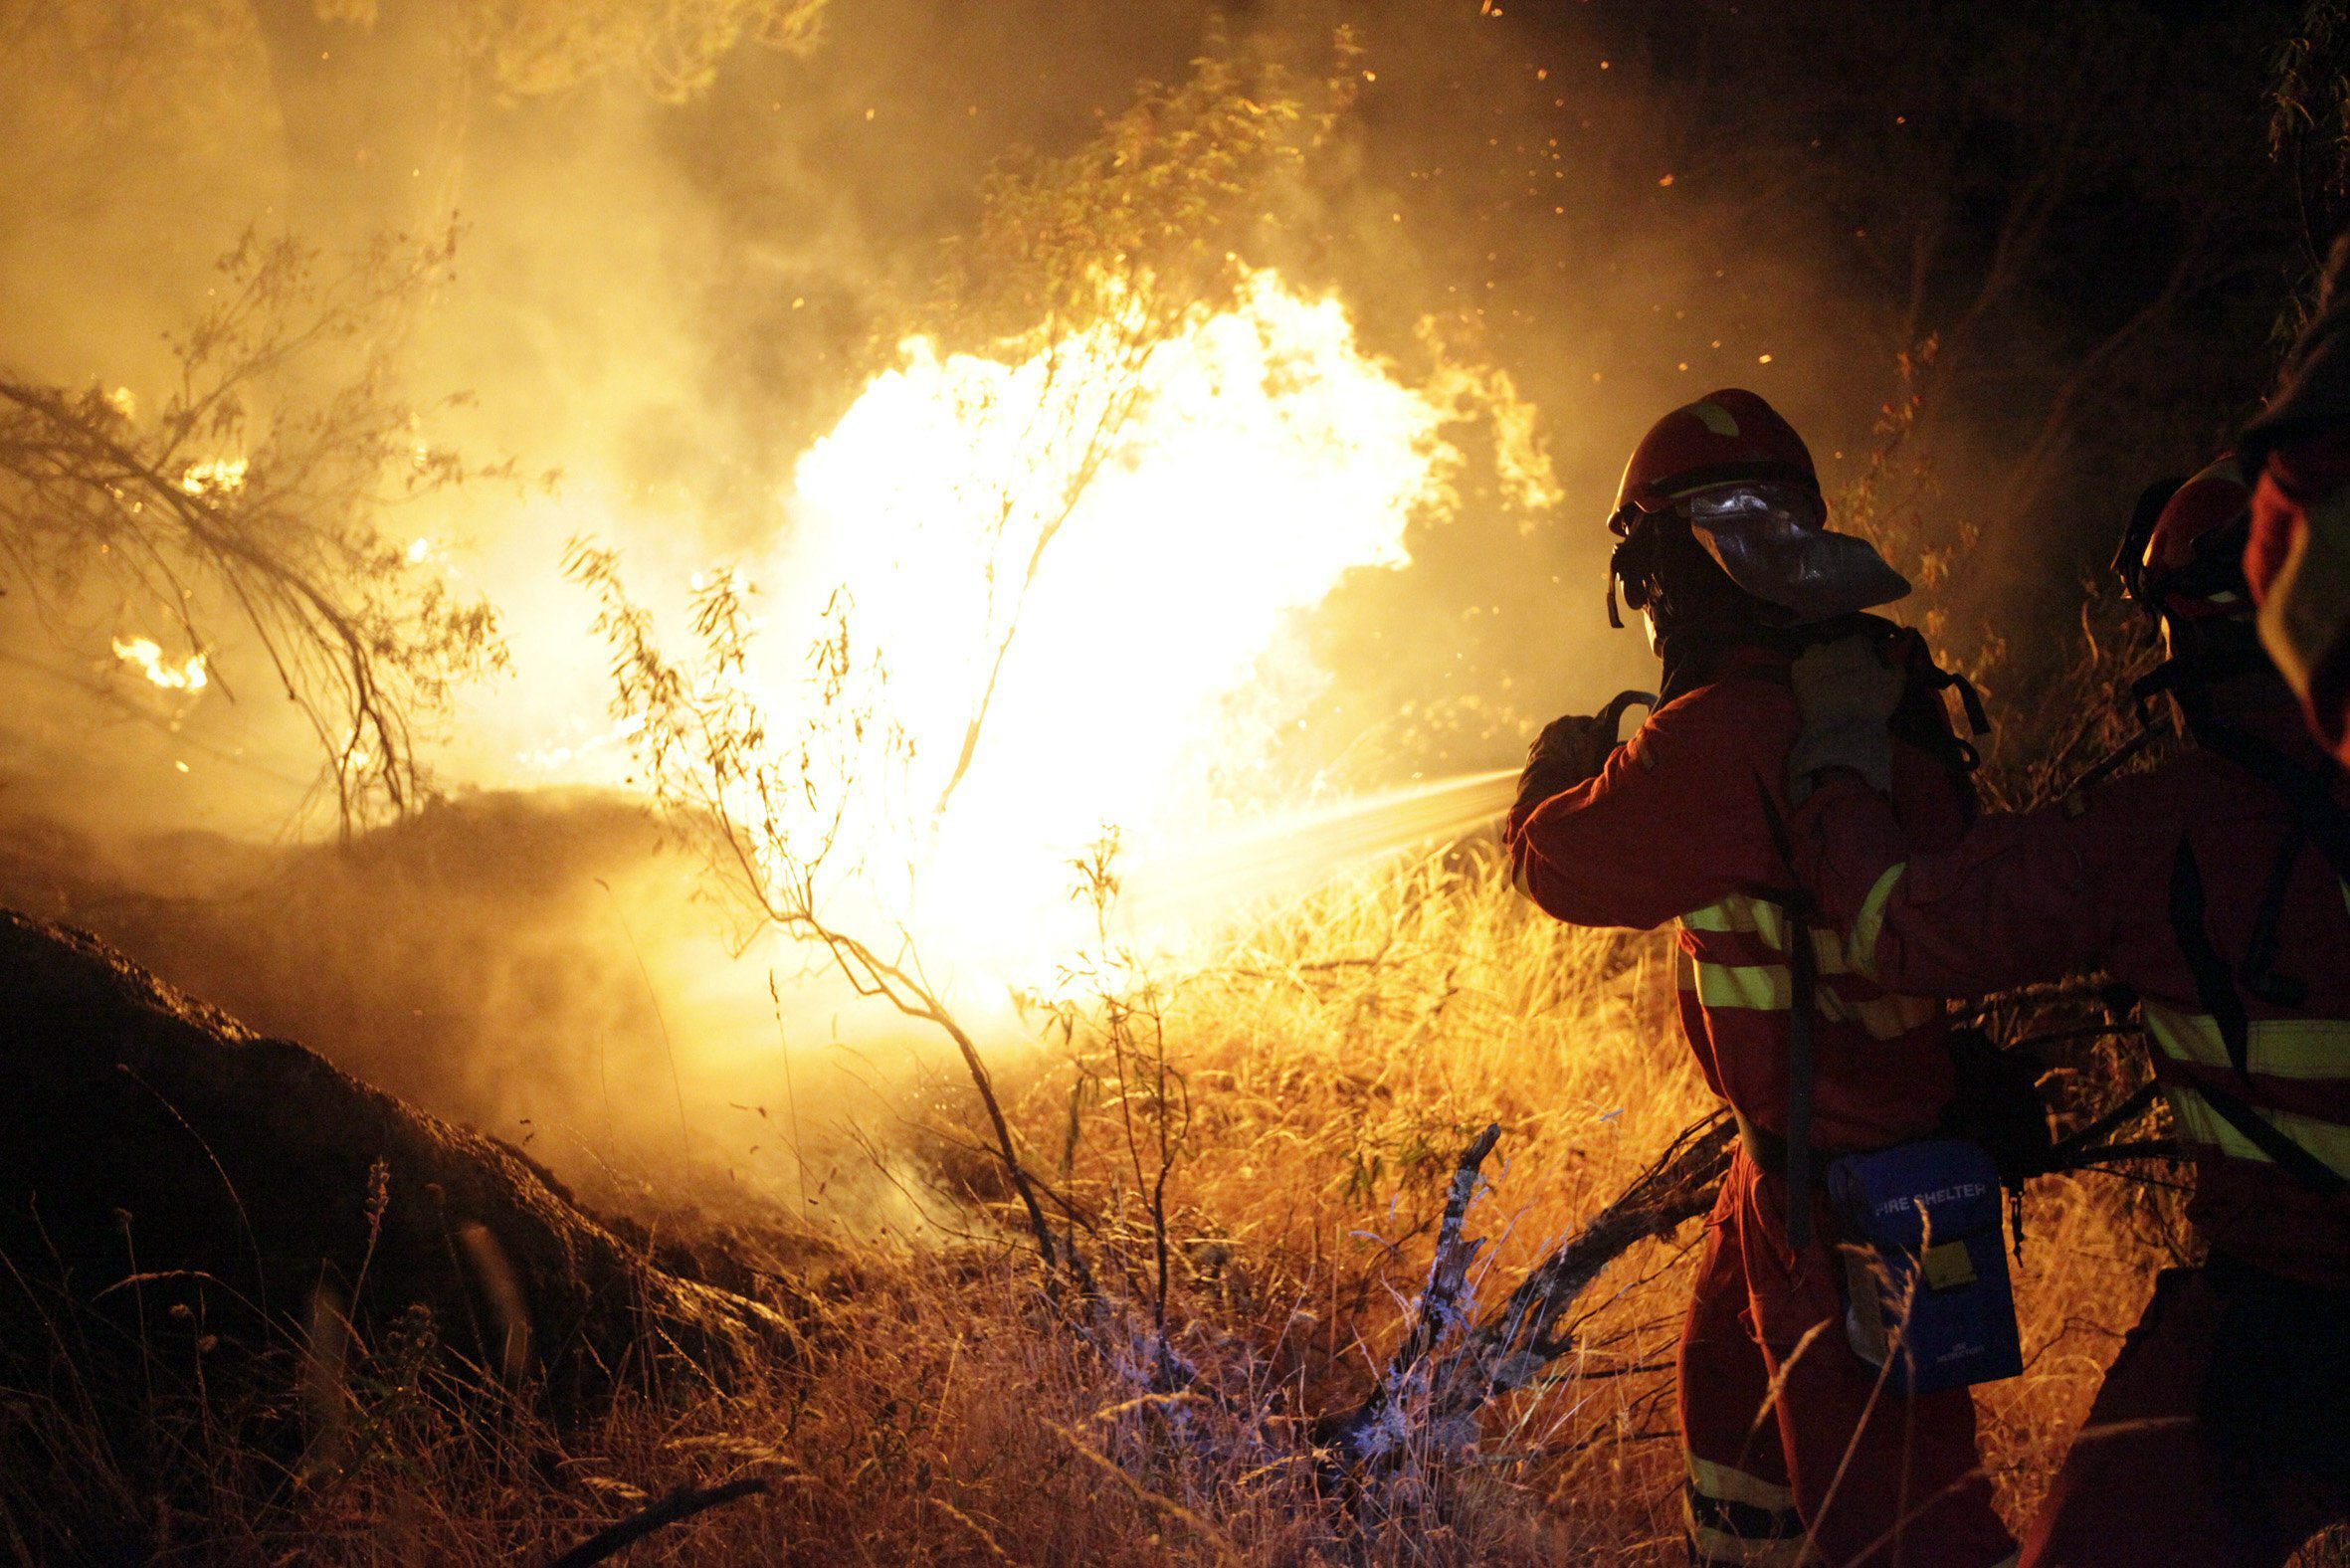 La UME participará con 3.000 militares en la campaña contra incendios